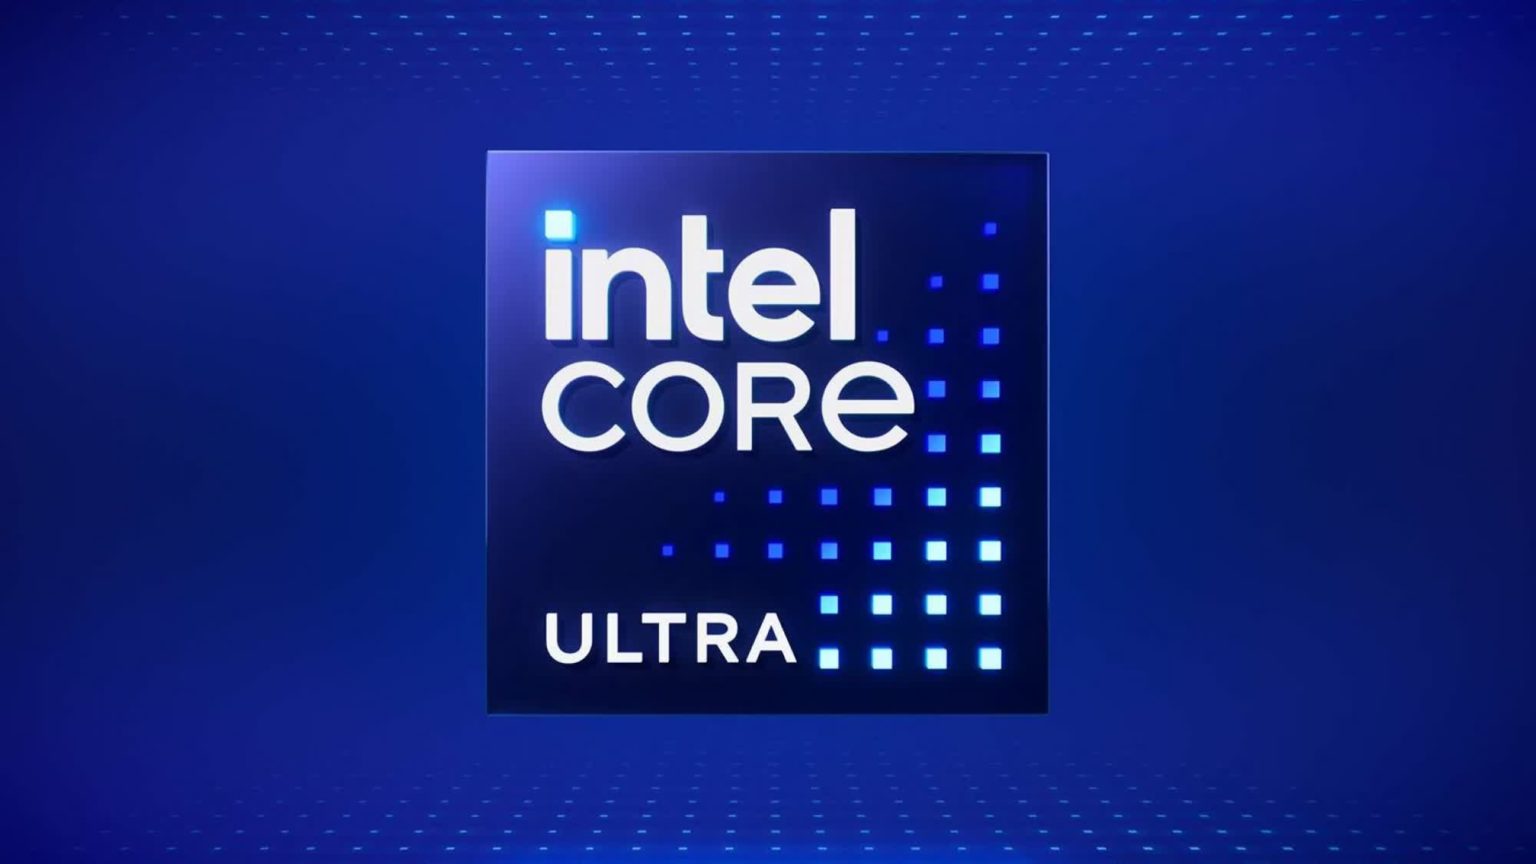 Intel Core Ultra 5 234V Lunar Lake CPU revealed in latest firmware